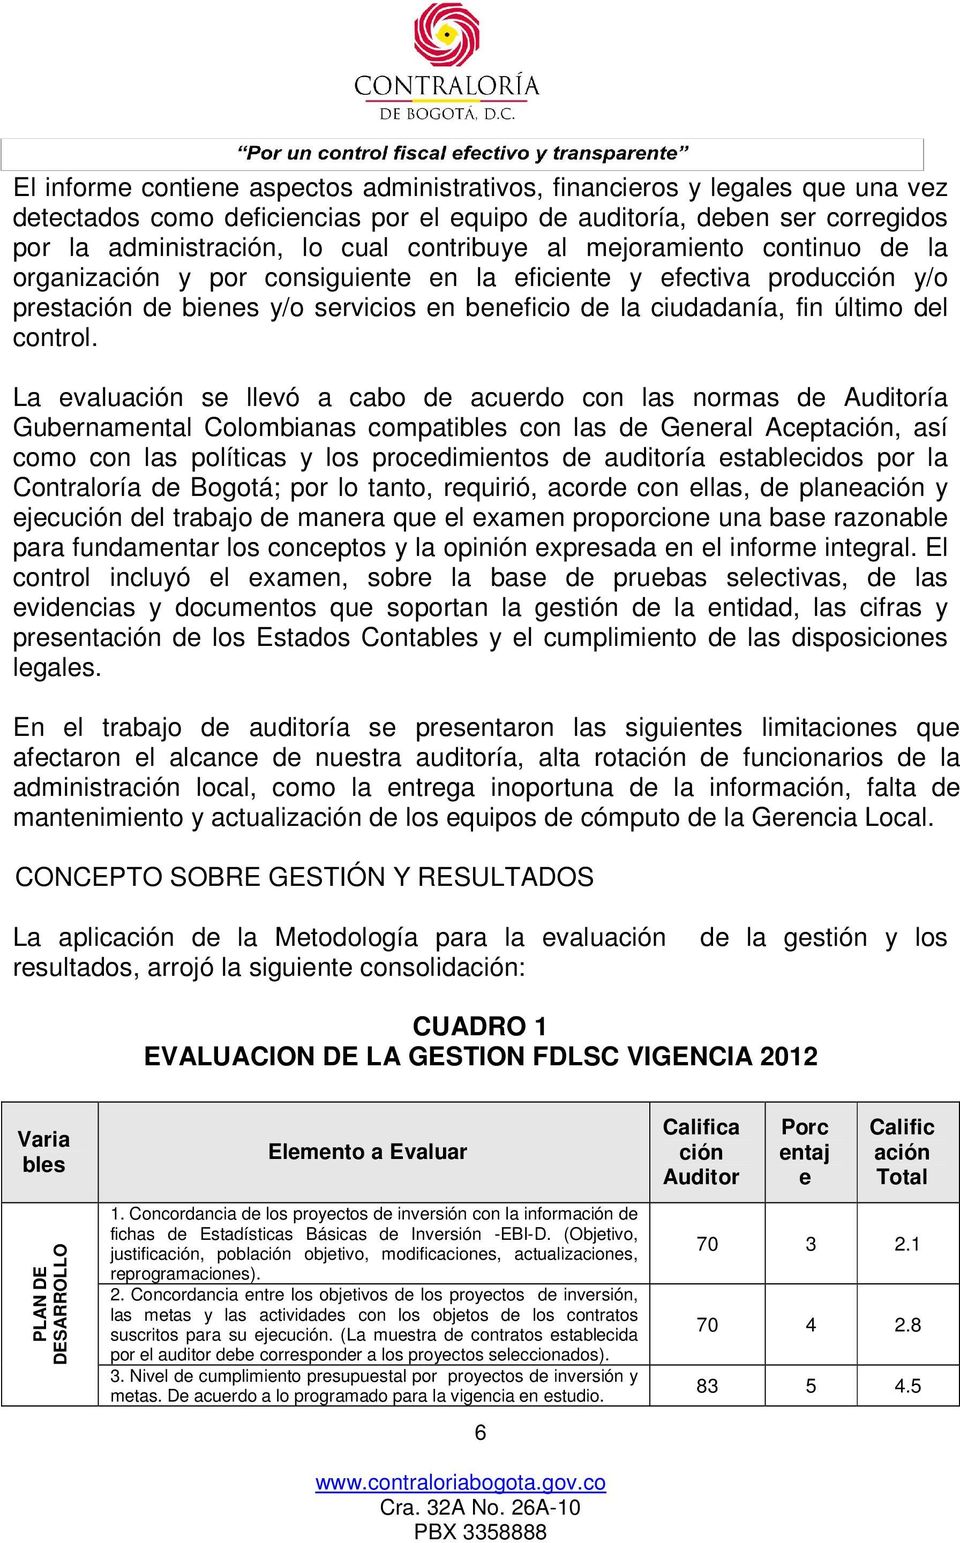 La evaluación se llevó a cabo de acuerdo con las normas de Auditoría Gubernamental Colombianas compatibles con las de General Aceptación, así como con las políticas y los procedimientos de auditoría